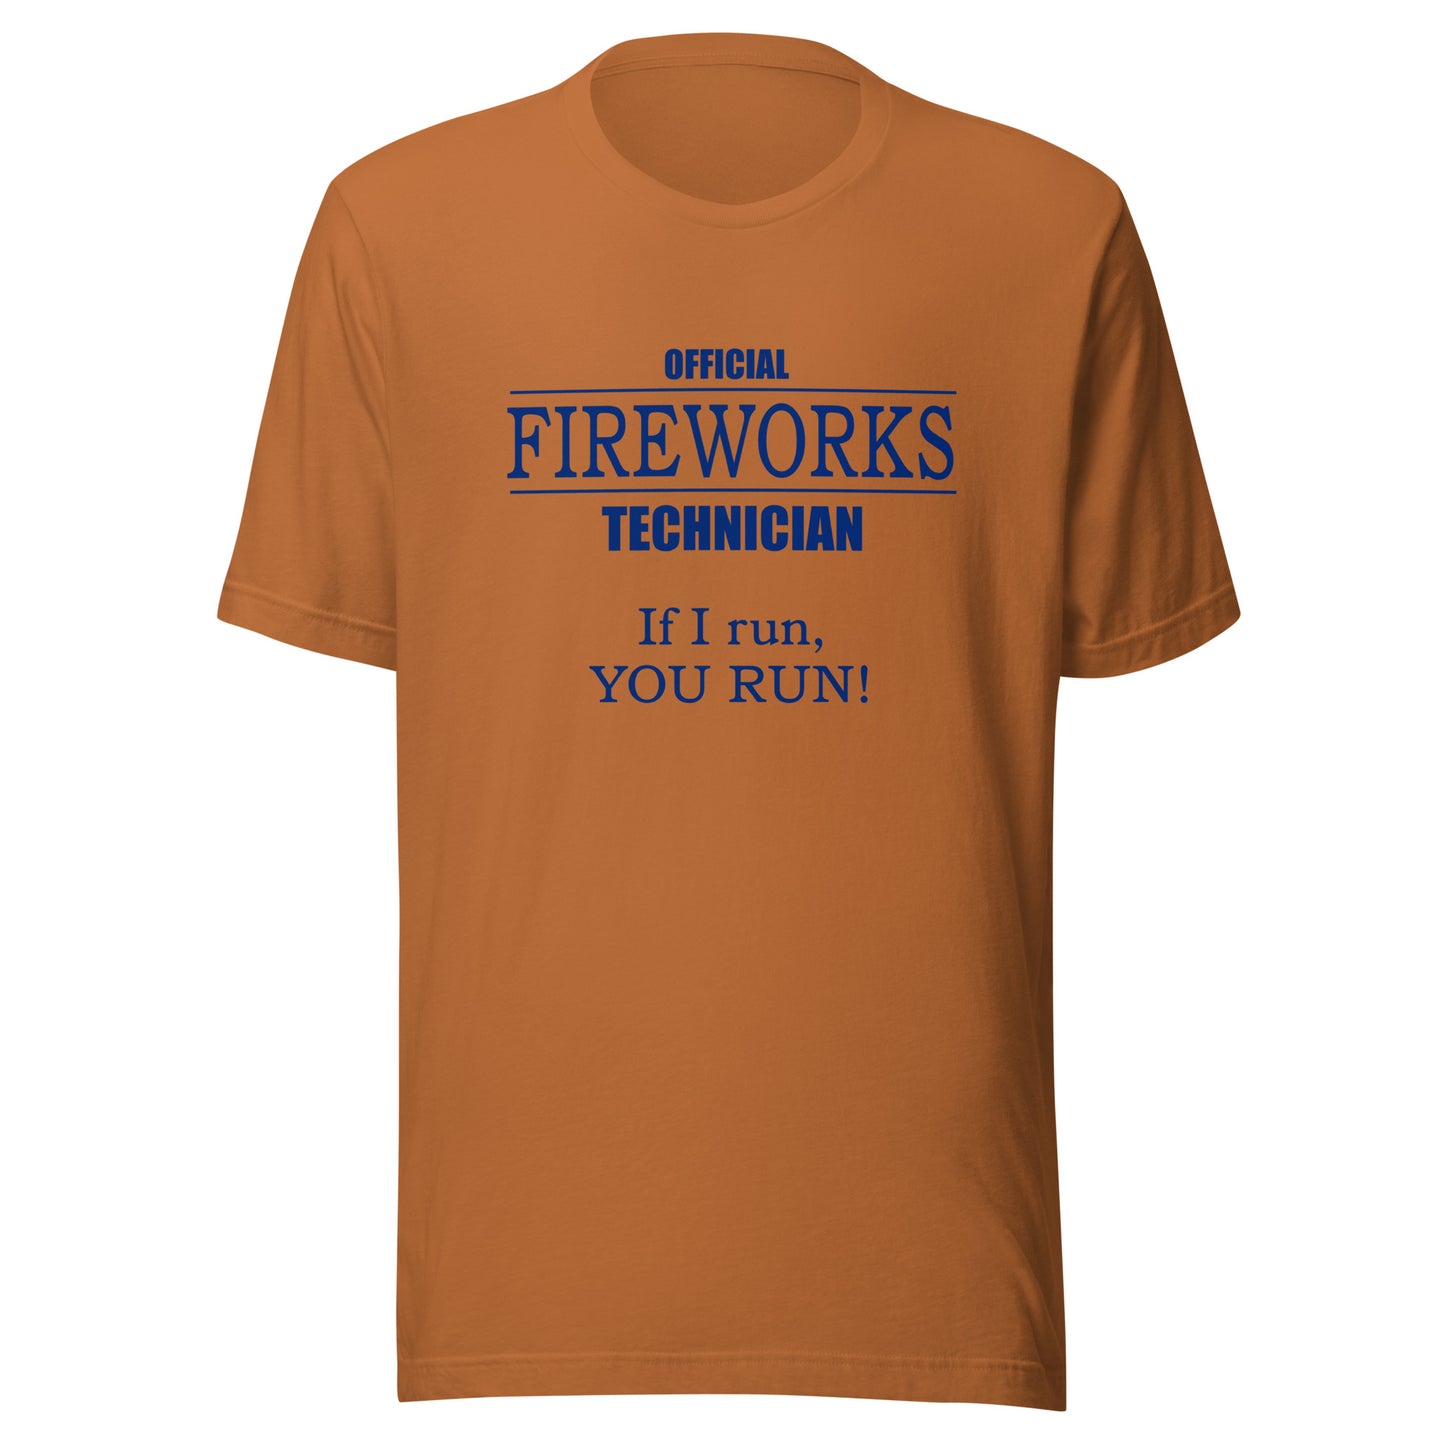 Official Fireworks Technician Unisex t-shirt Light